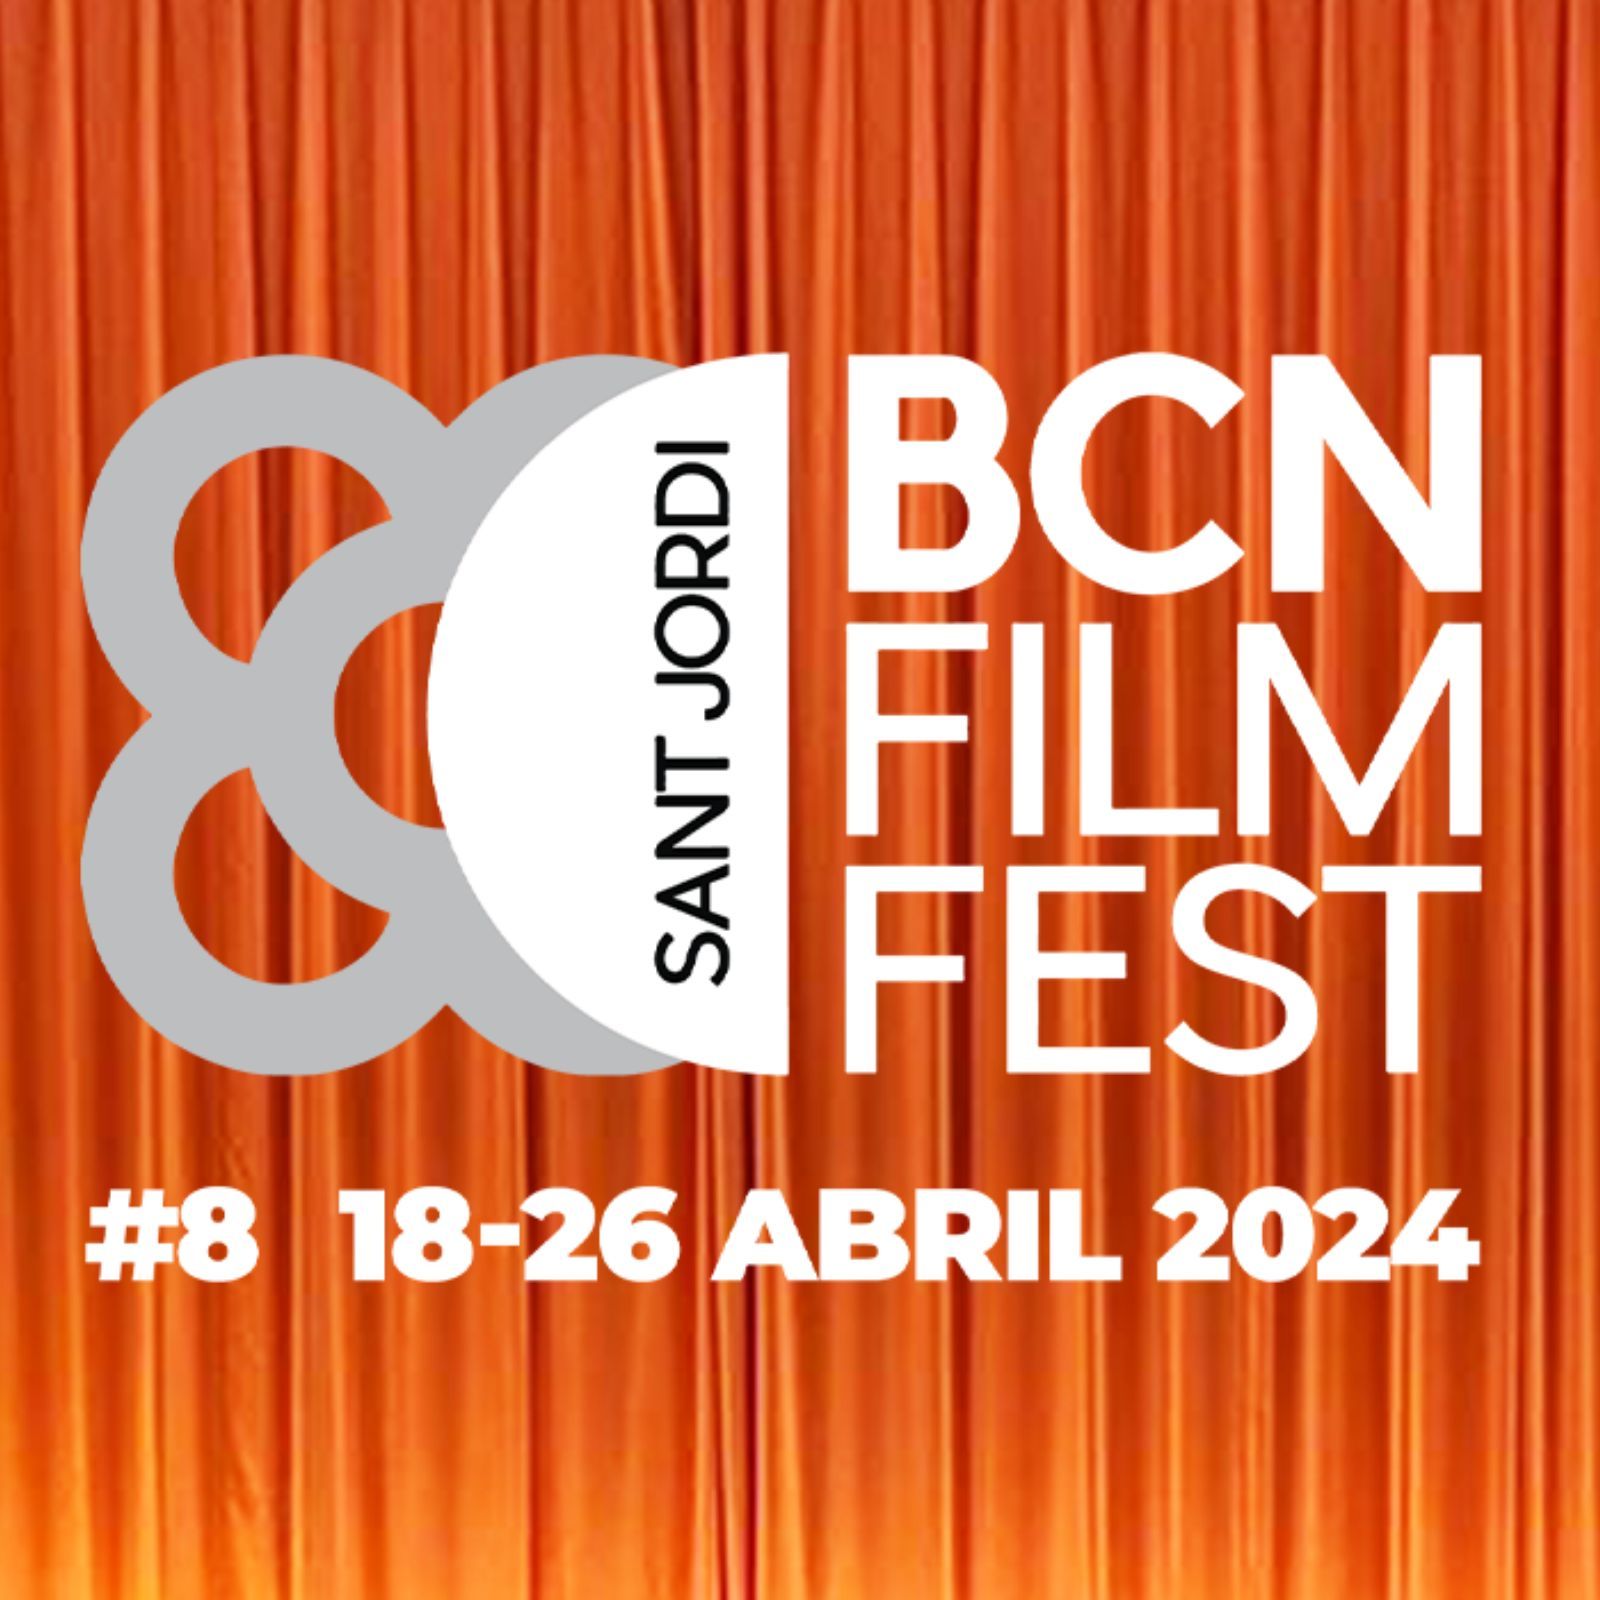 El ojo crítico - El Barcelona Film Fest y PhotoESPAÑA, no todo son libros